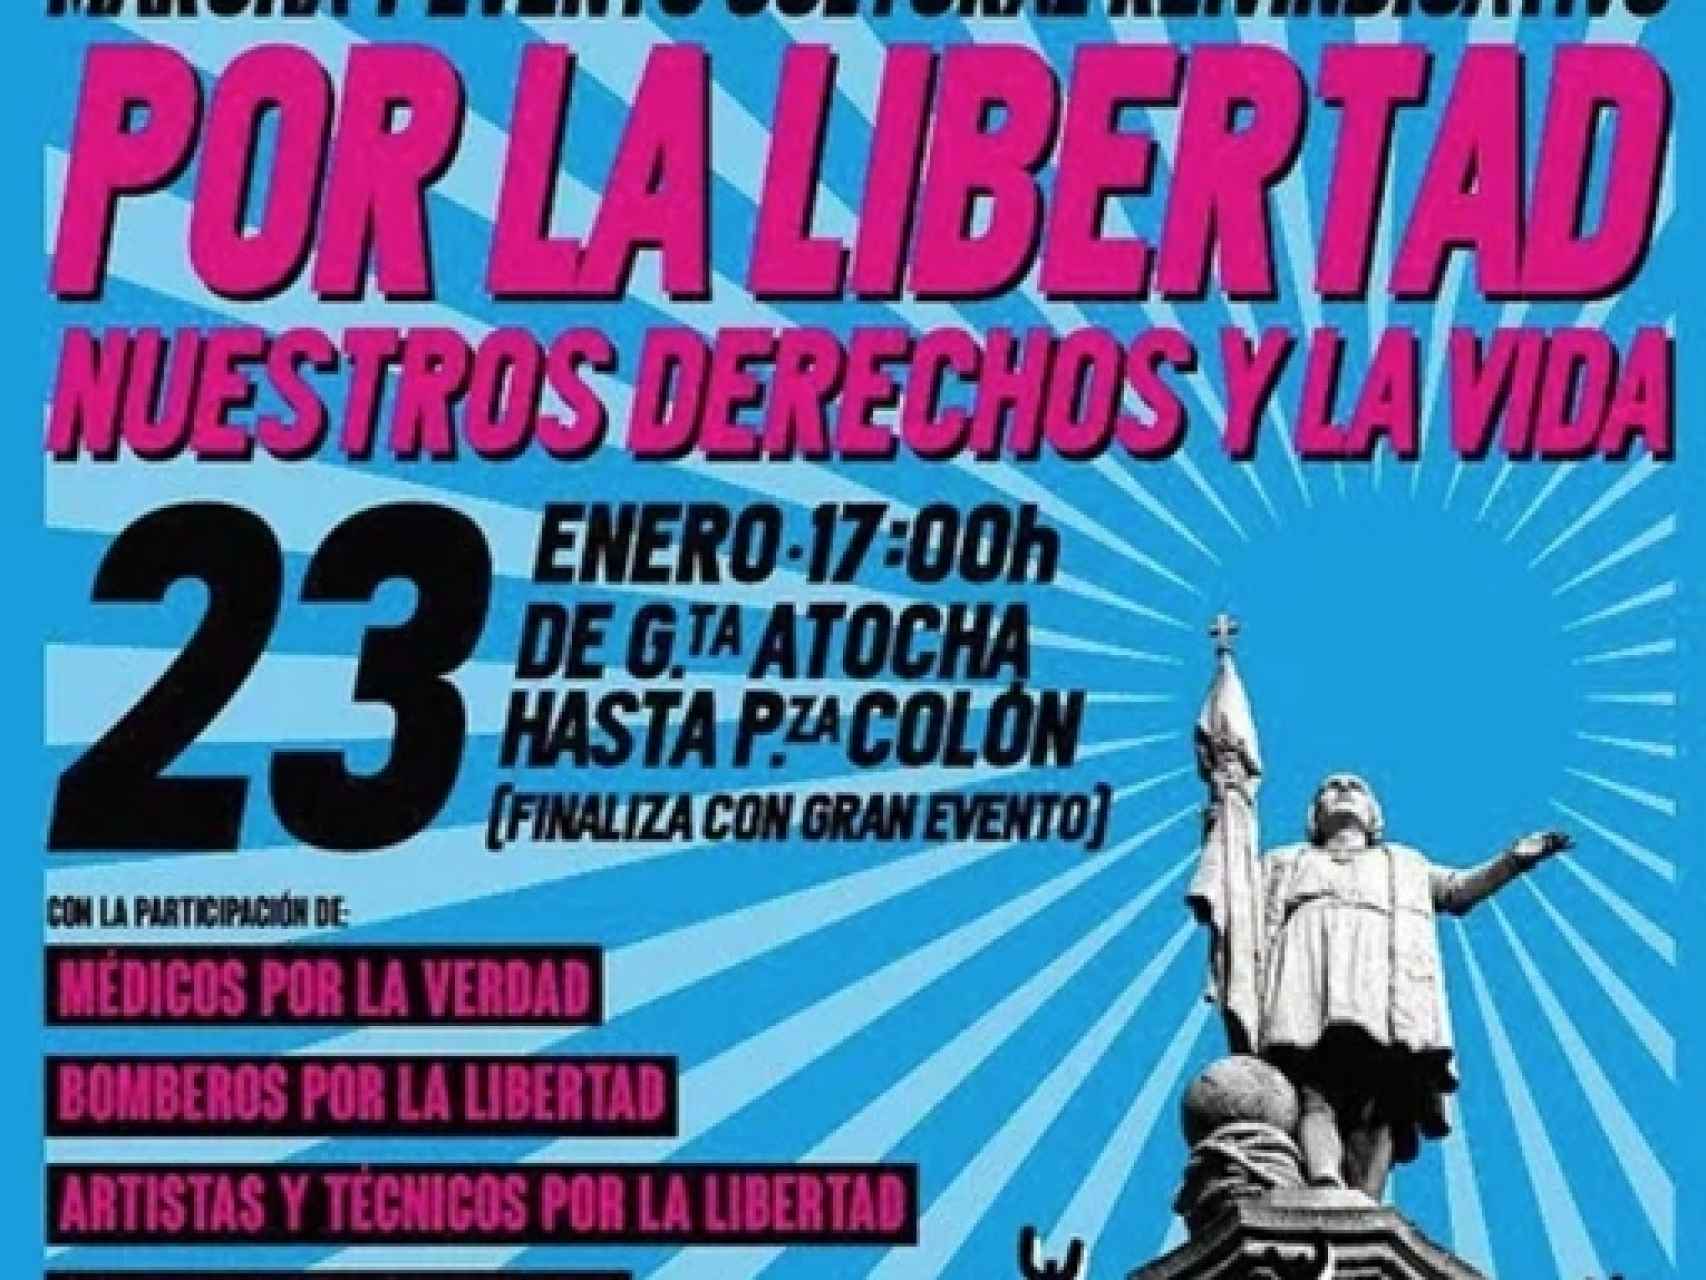 Cartel promocional de la manifestación negacionista.